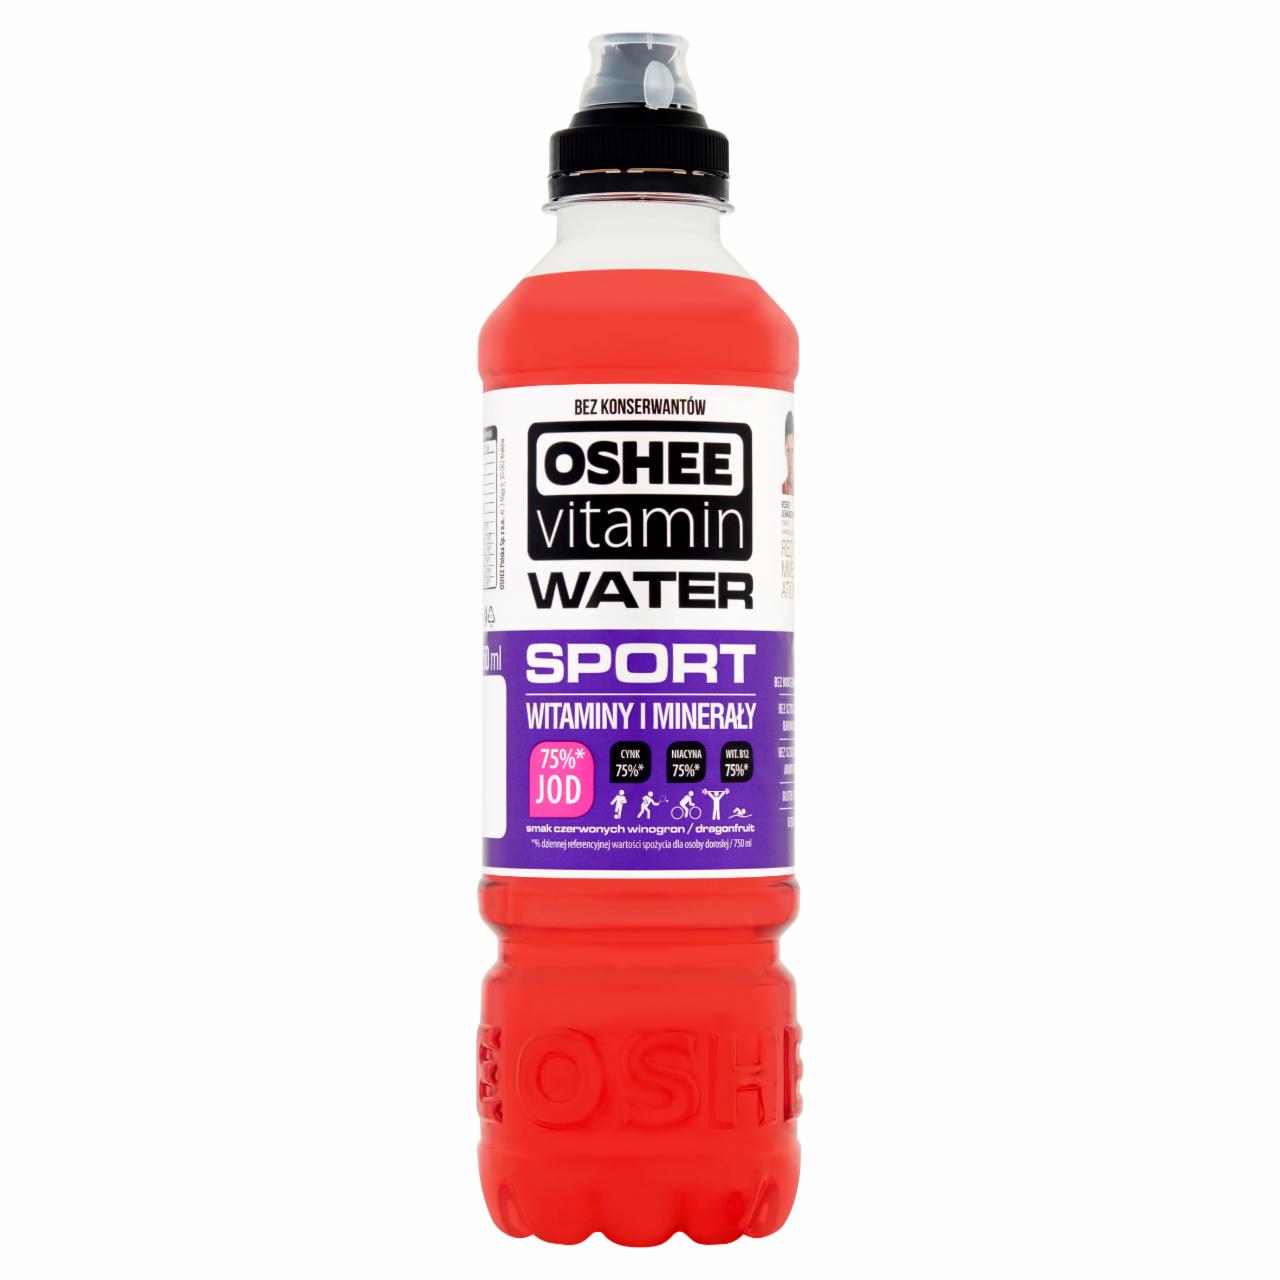 Zdjęcia - Oshee Vitamin Water Napój niegazowany o smaku czerwonych winogron i dragonfruit 750 ml